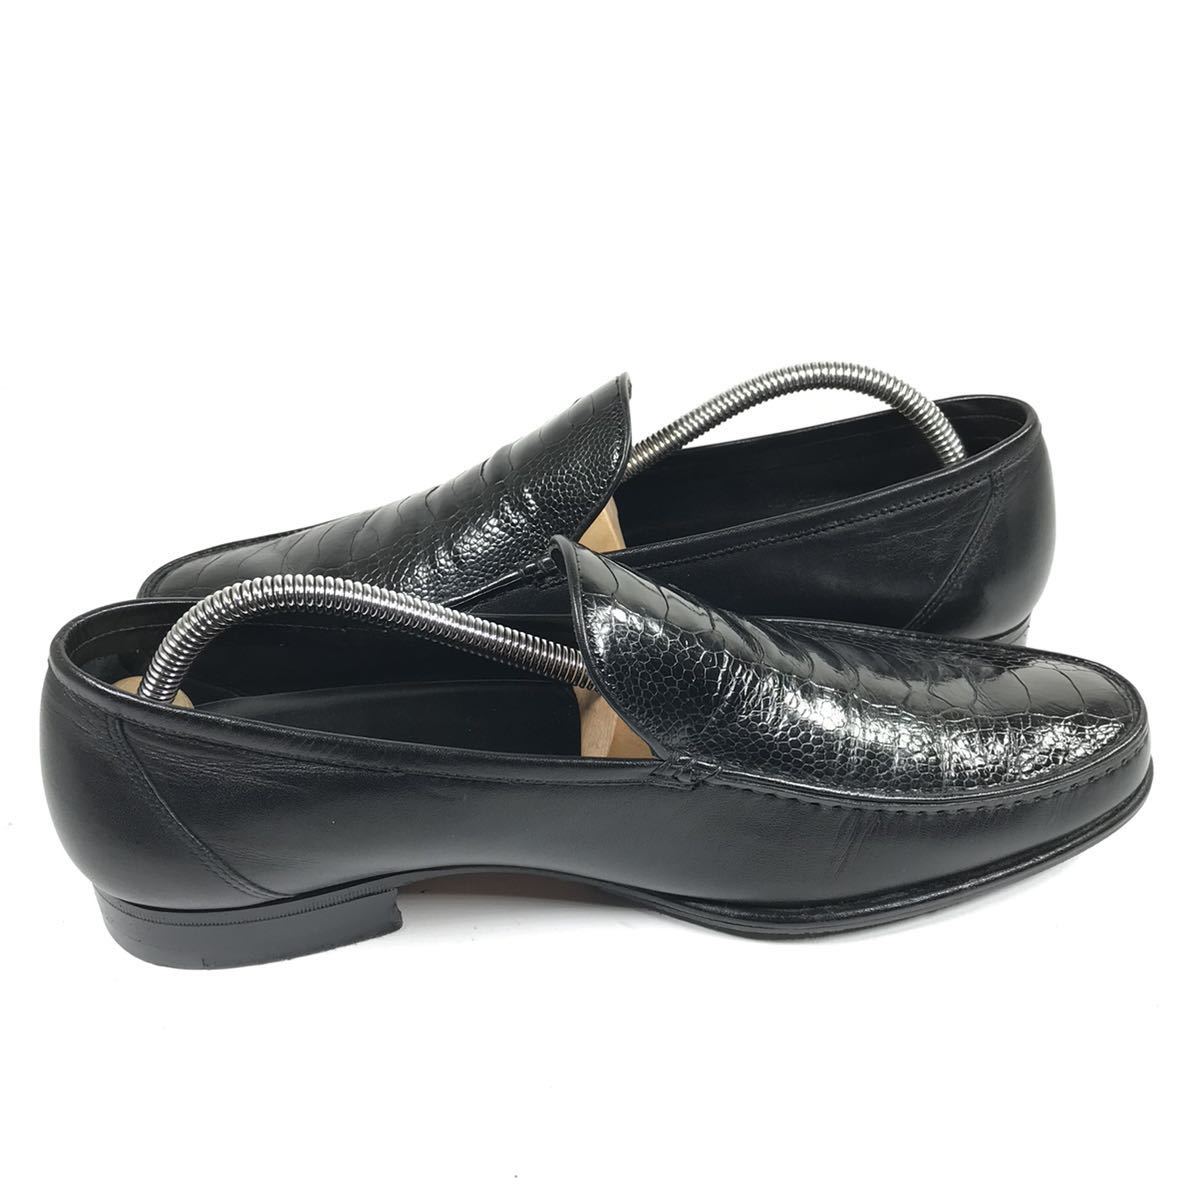  прекрасный товар [a* тест -ni] подлинный товар a.testoni обувь 27.5cm чёрный серия o- -тактный нога туфли без застежки бизнес обувь Ostrich . птица мужской сделано в Италии 8 H